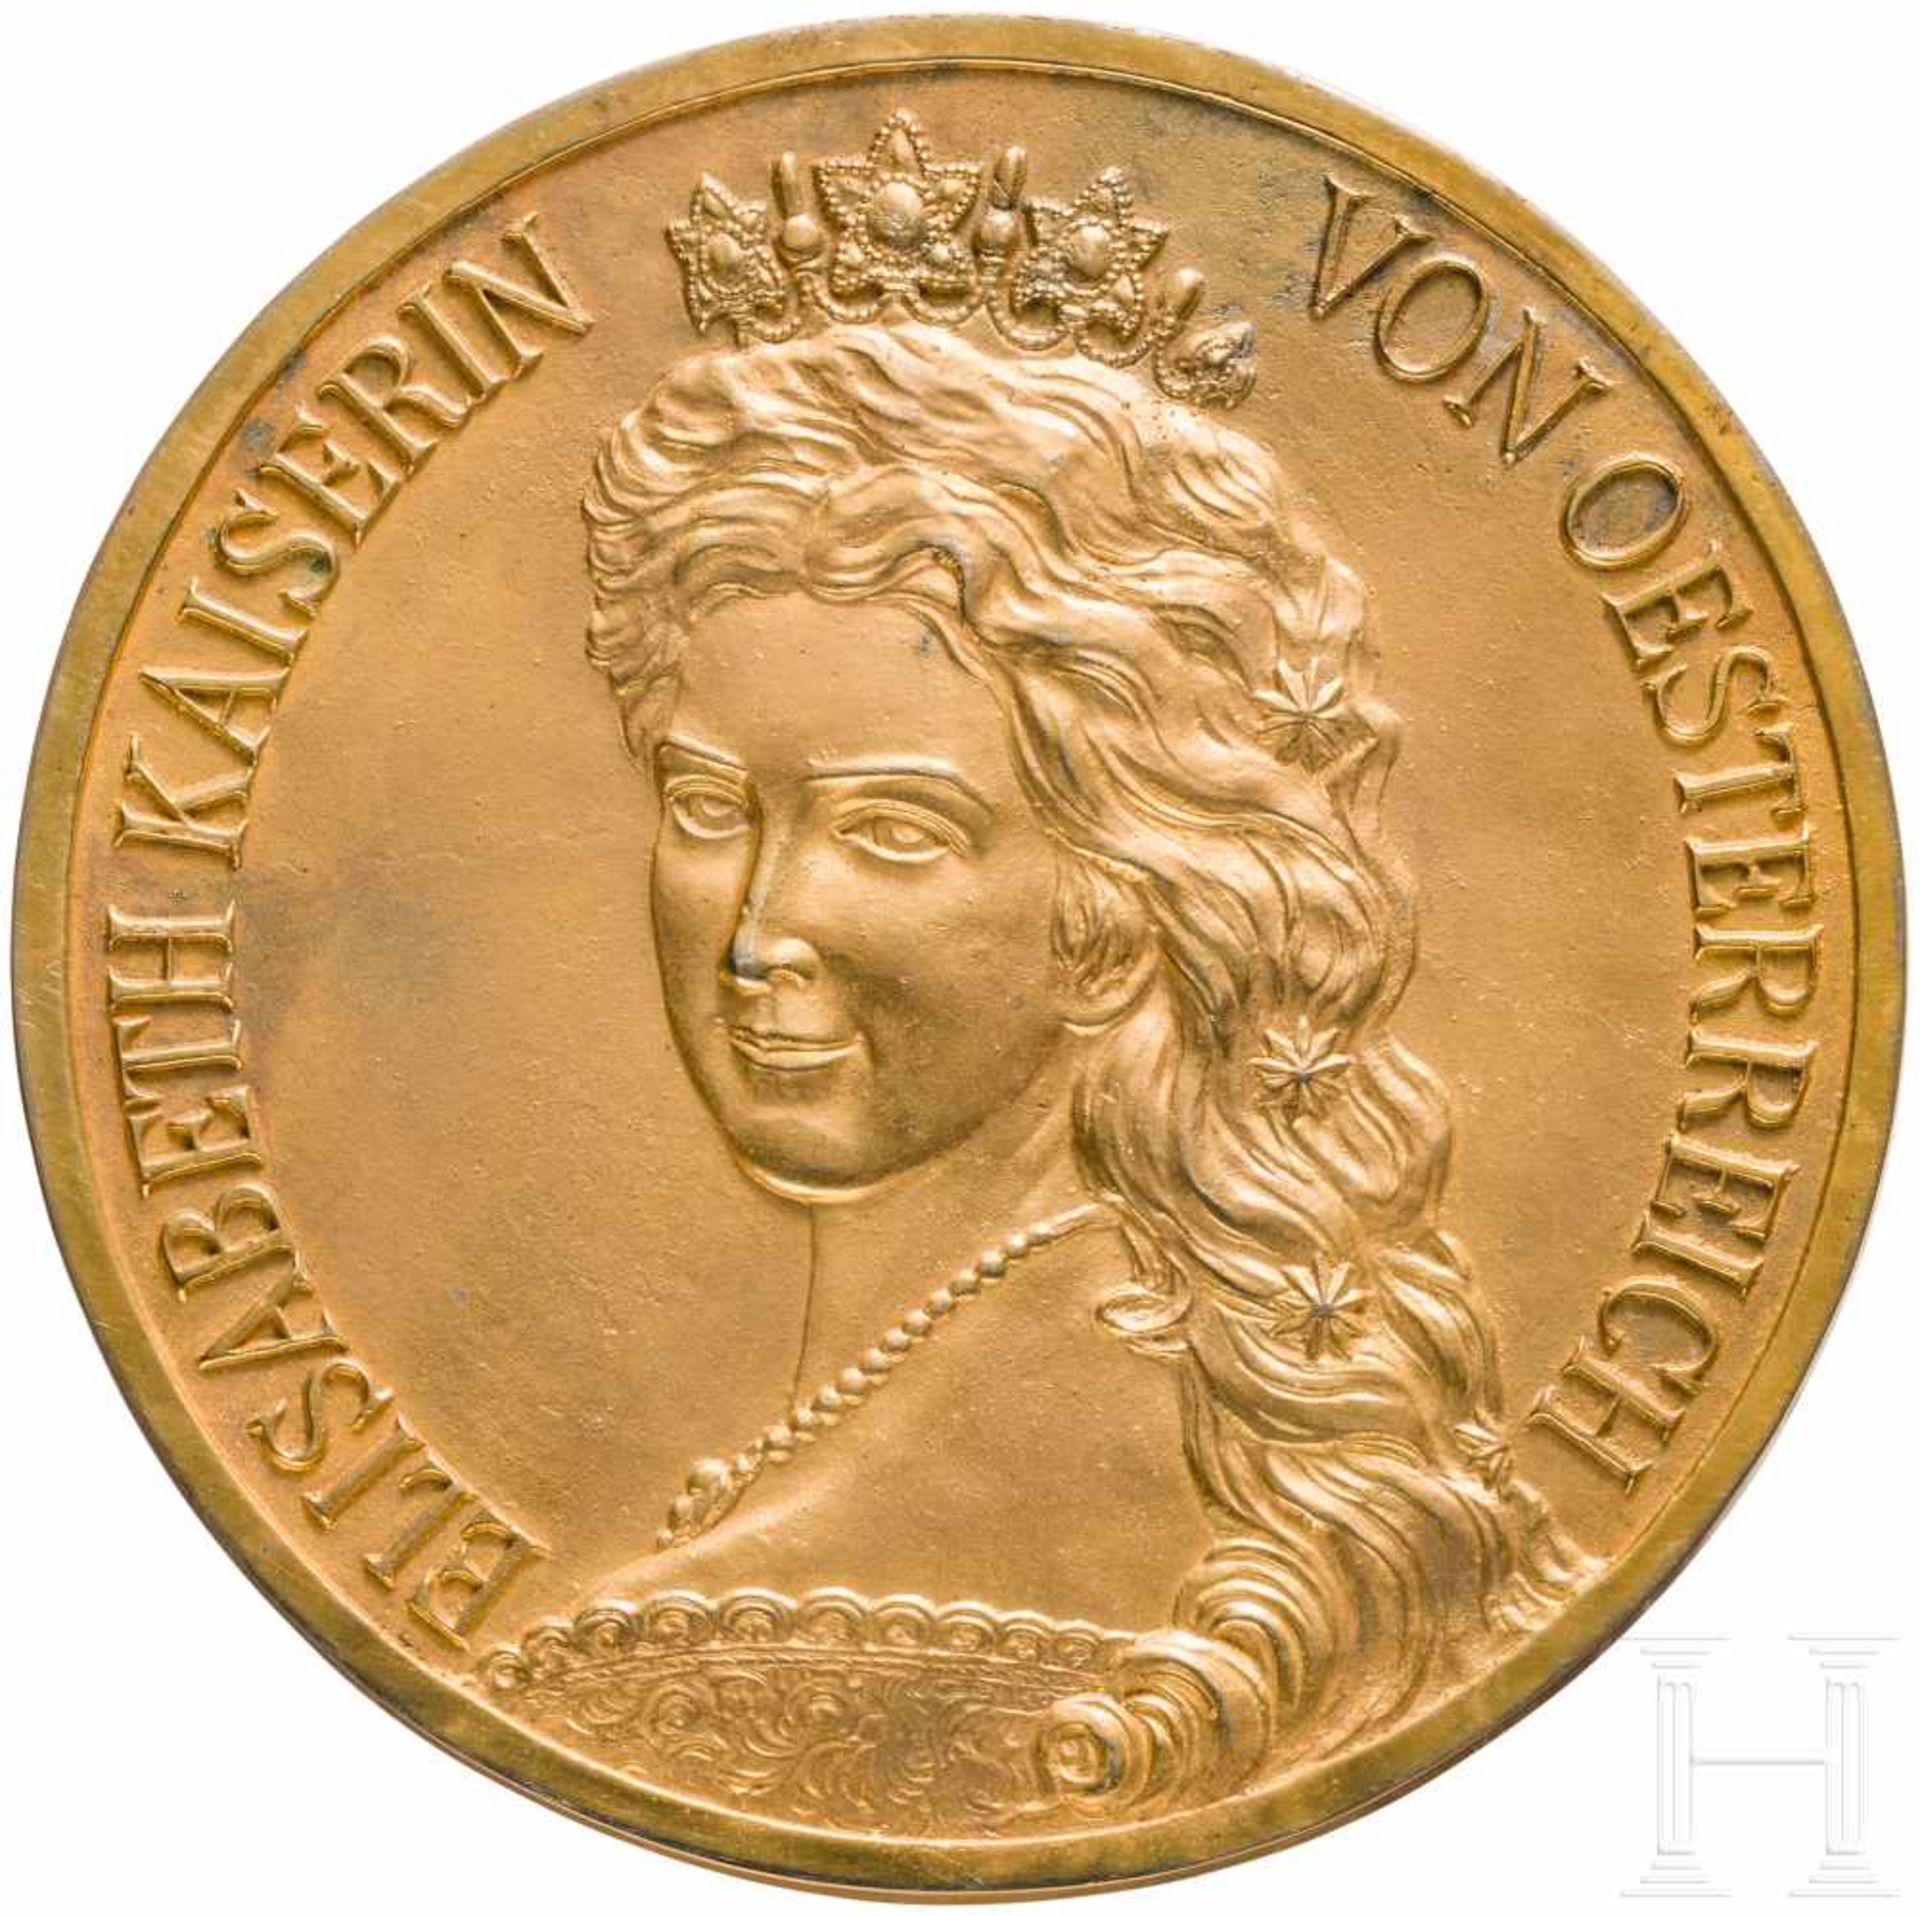 Kaiserin Elisabeth von Österreich - vergoldete Portraitplakette nach dem Portrait von F.X.